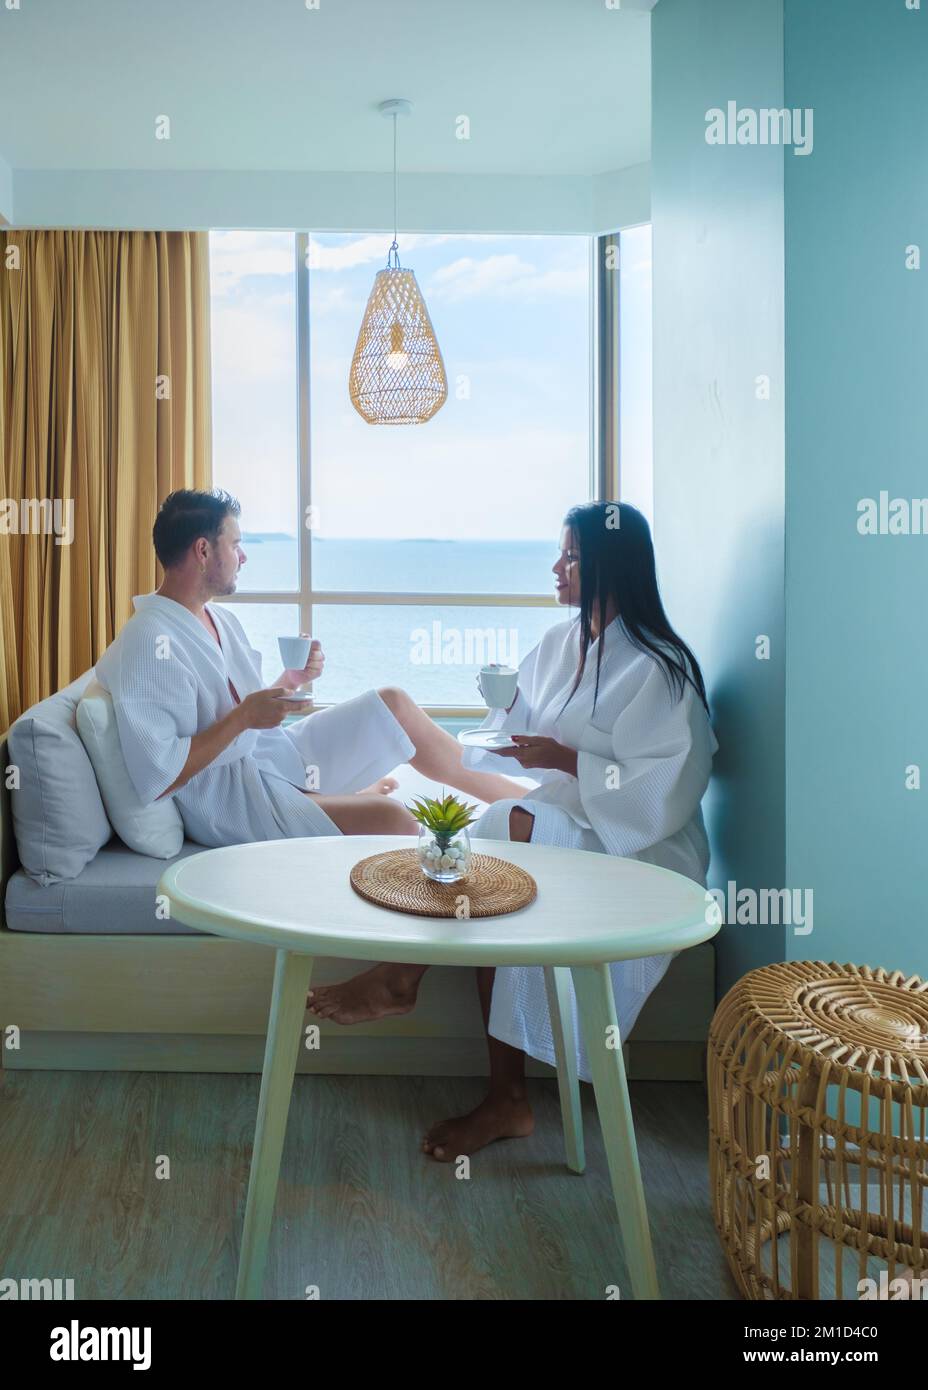 Un paio di donne asiatiche e uomini caucasici bevono caffè in una camera da letto dell'hotel che si affaccia sull'oceano in Thailandia Foto Stock